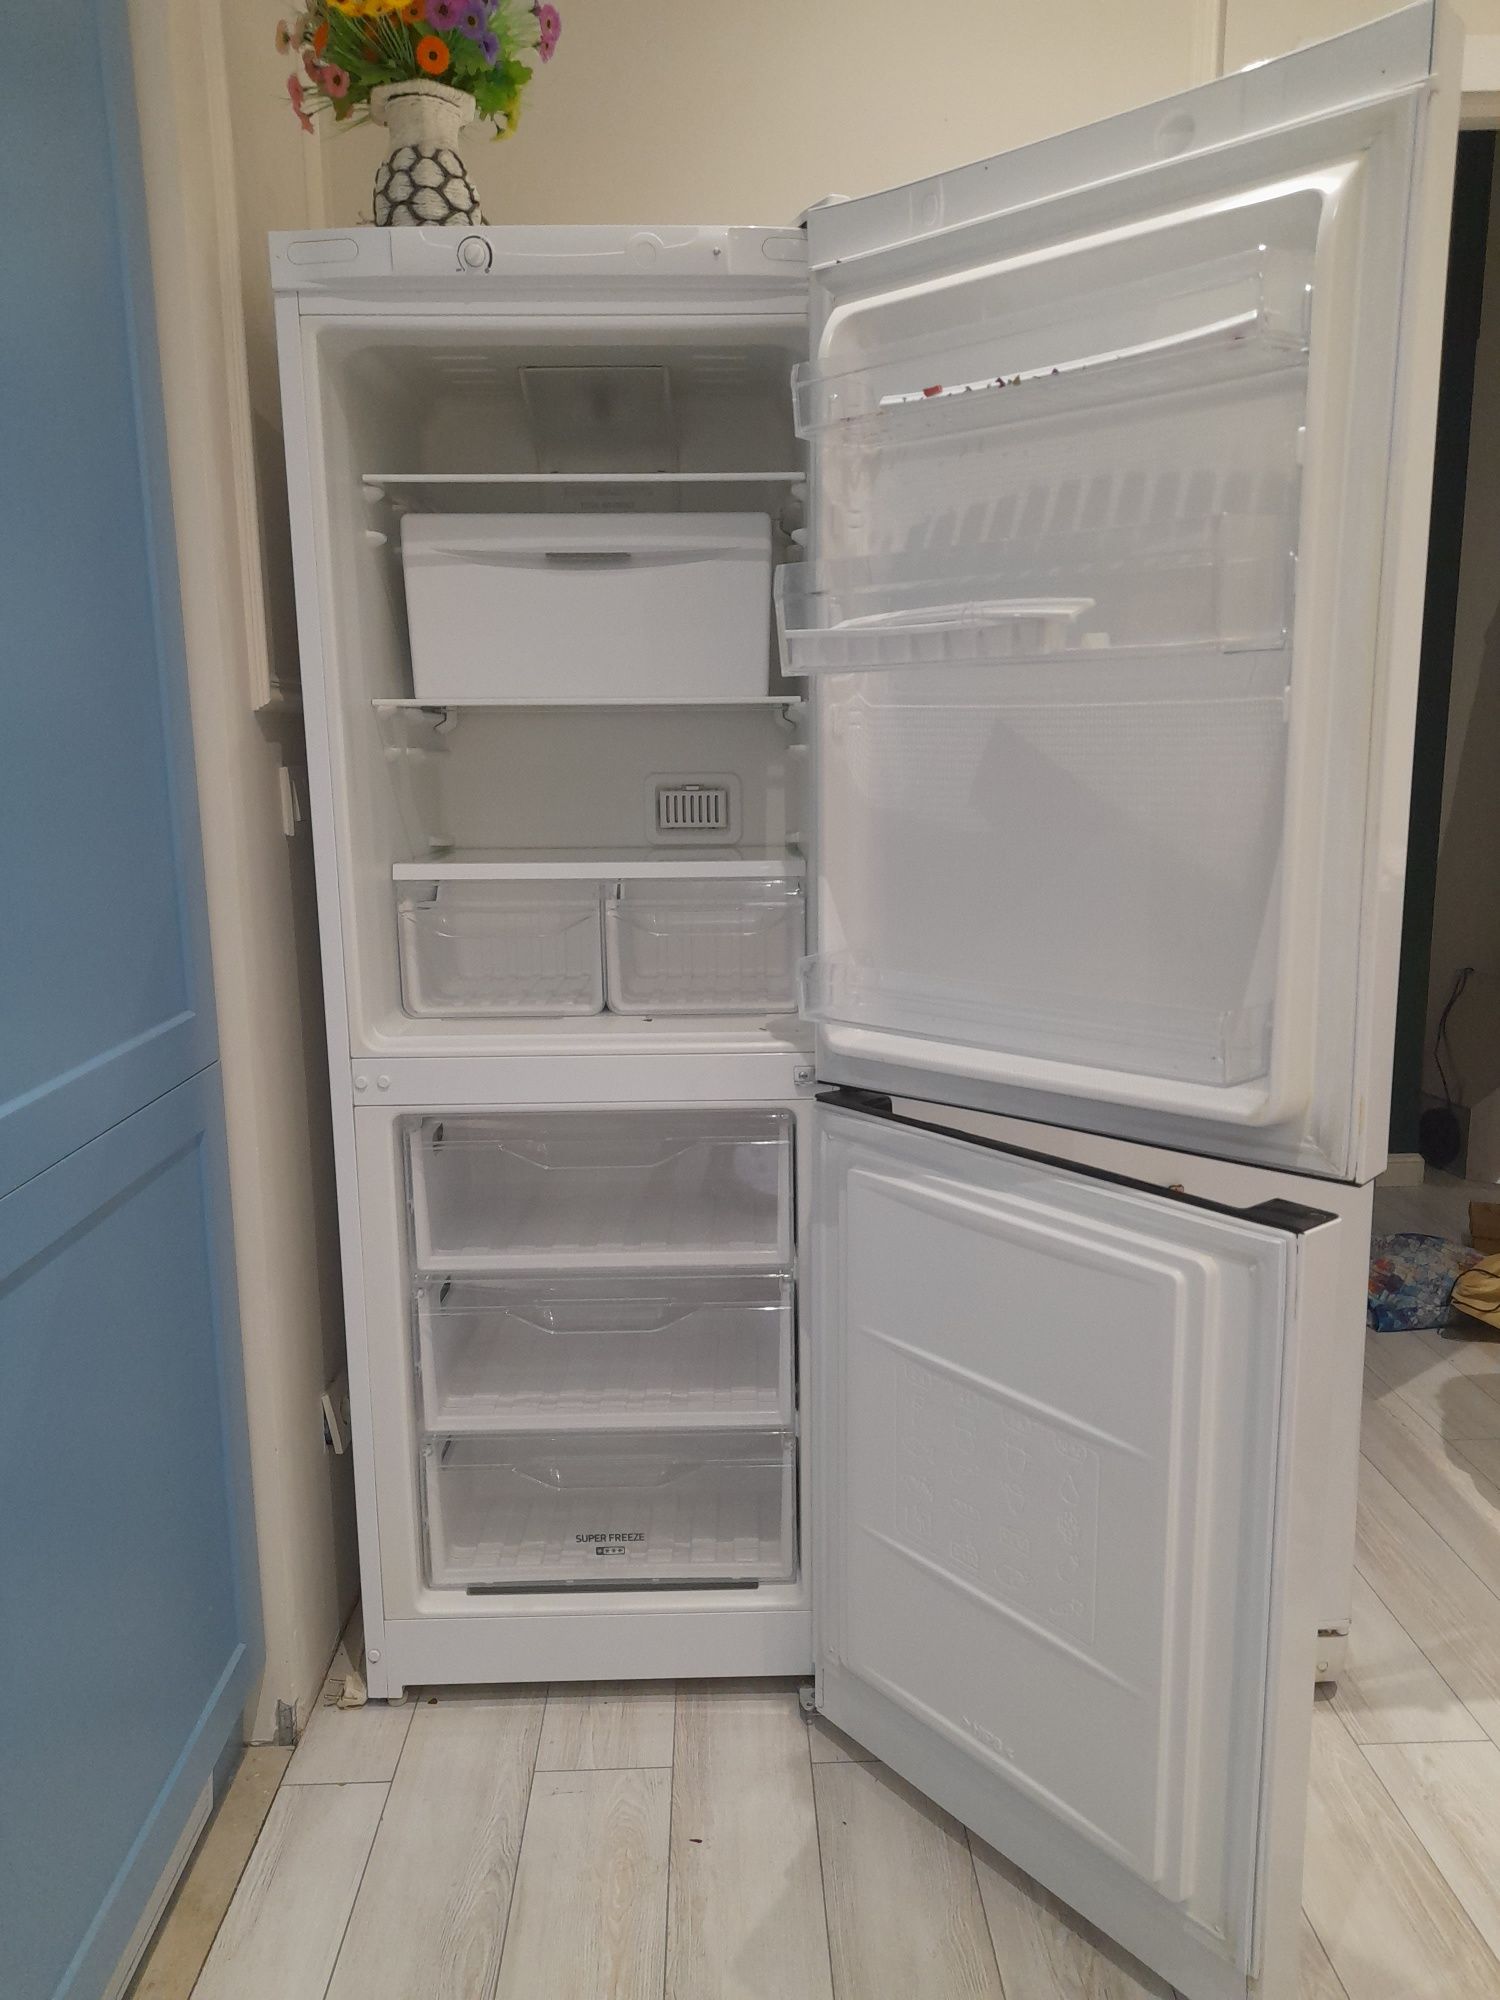 Продаётся холодильник Индезит, в отличном состоянии.